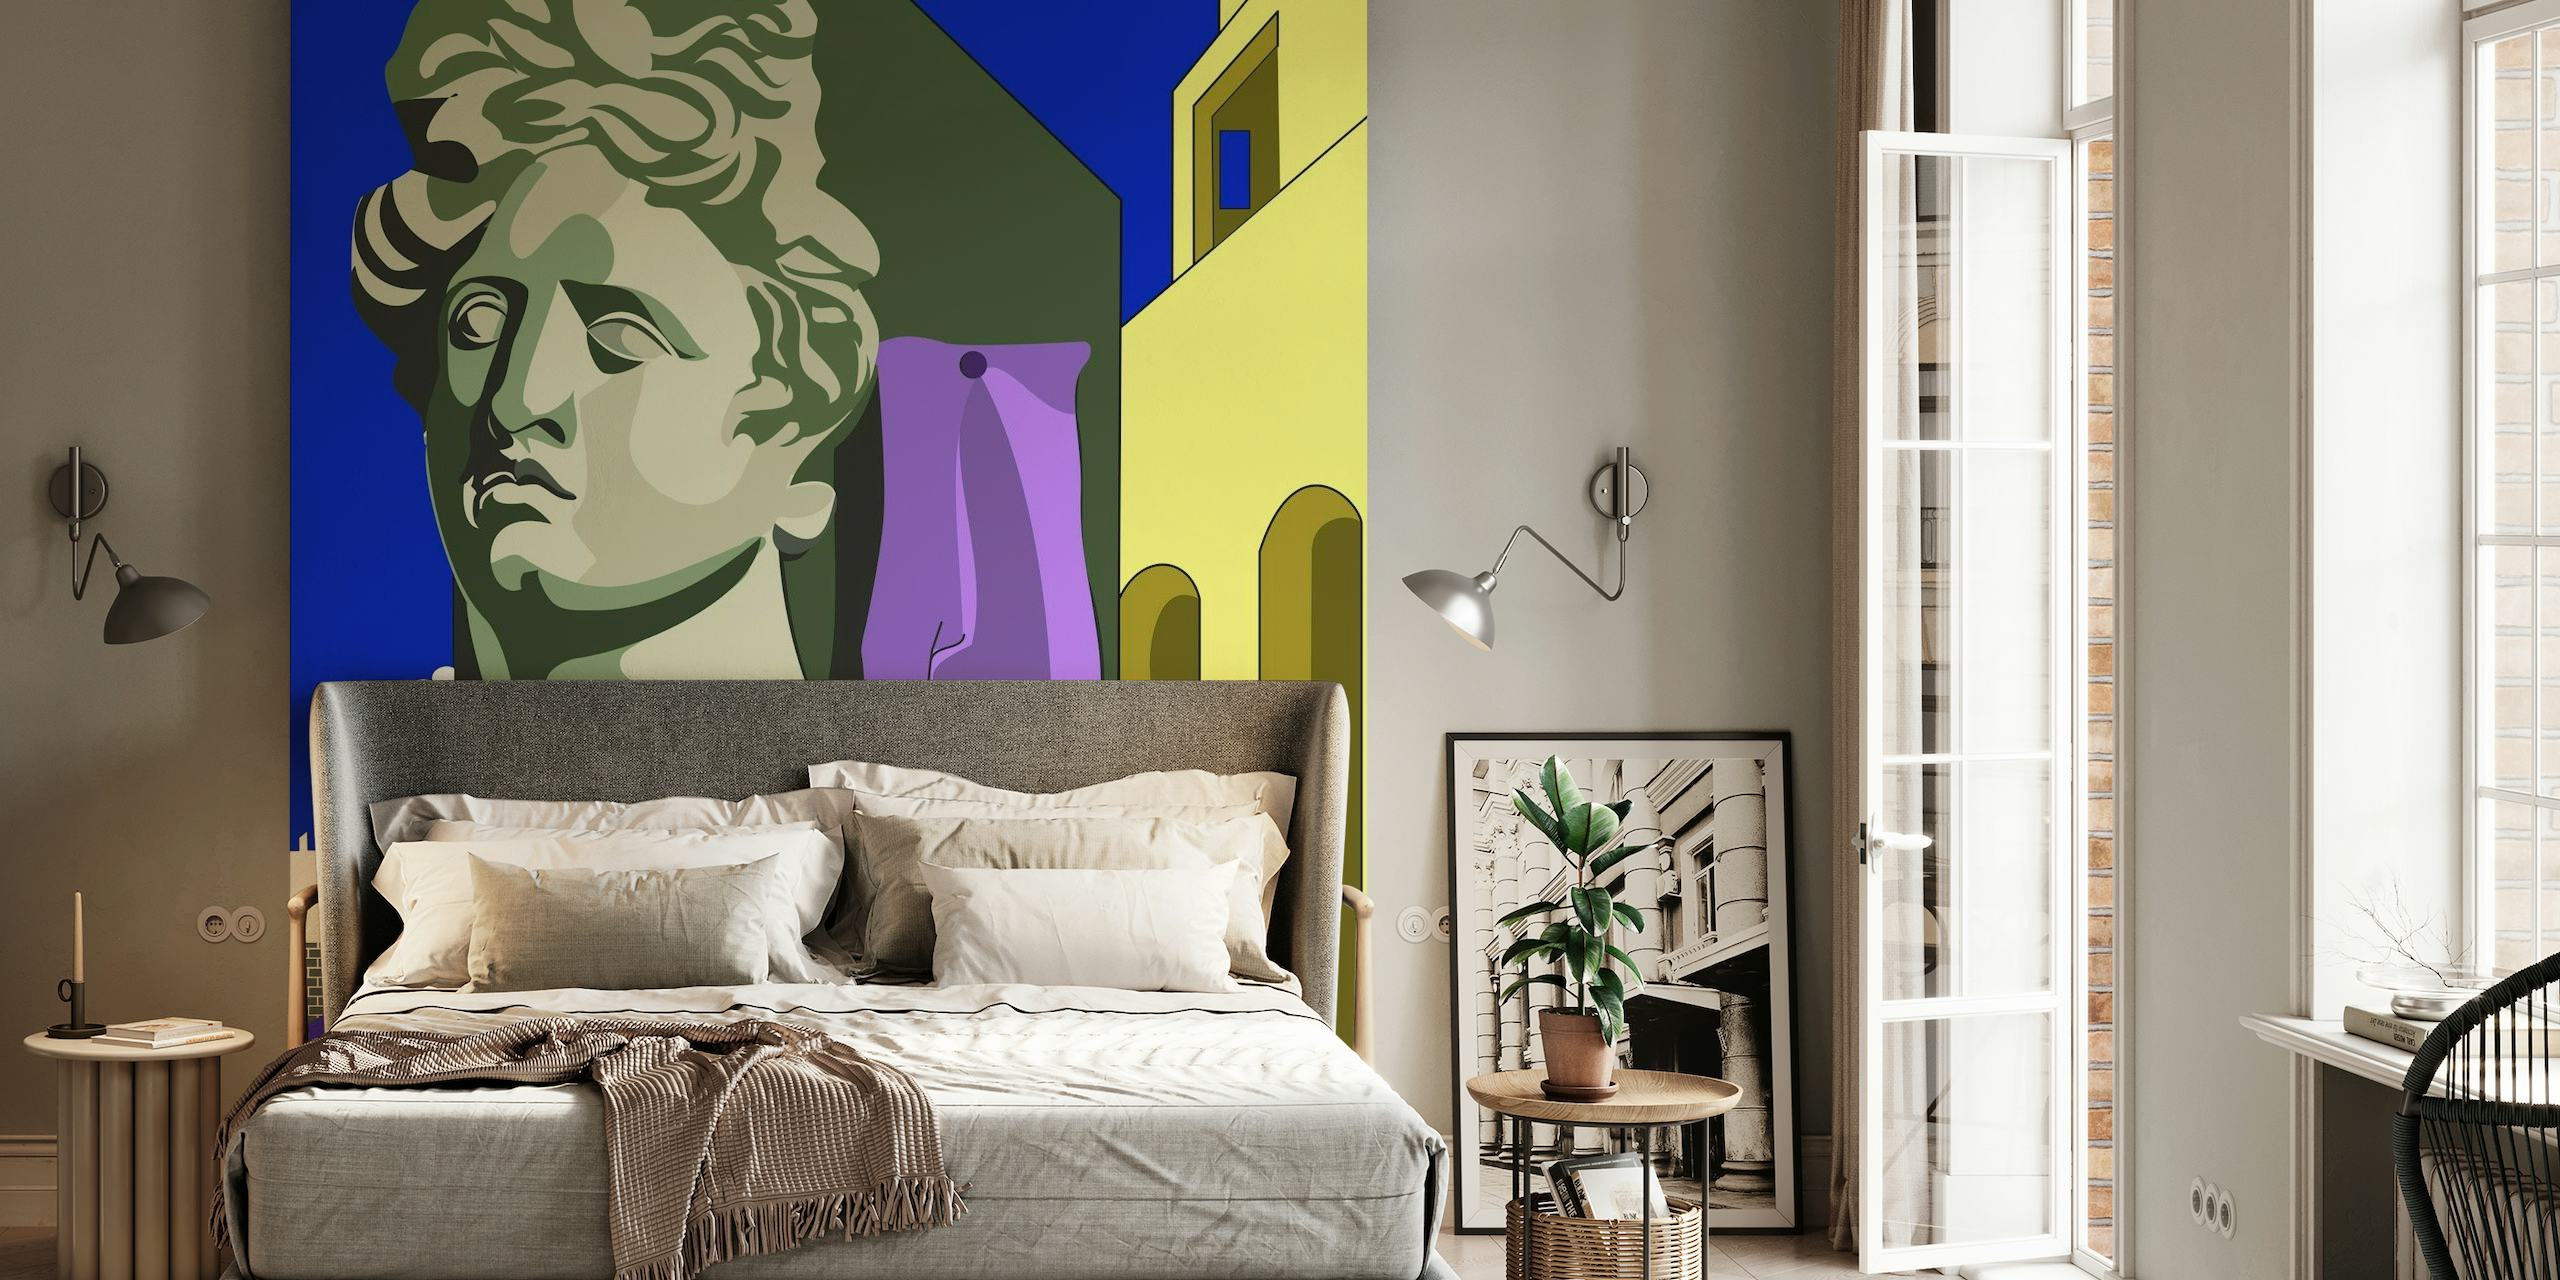 Stilizirano klasično poprsje usred zidnih slika sa apstraktnim oblicima